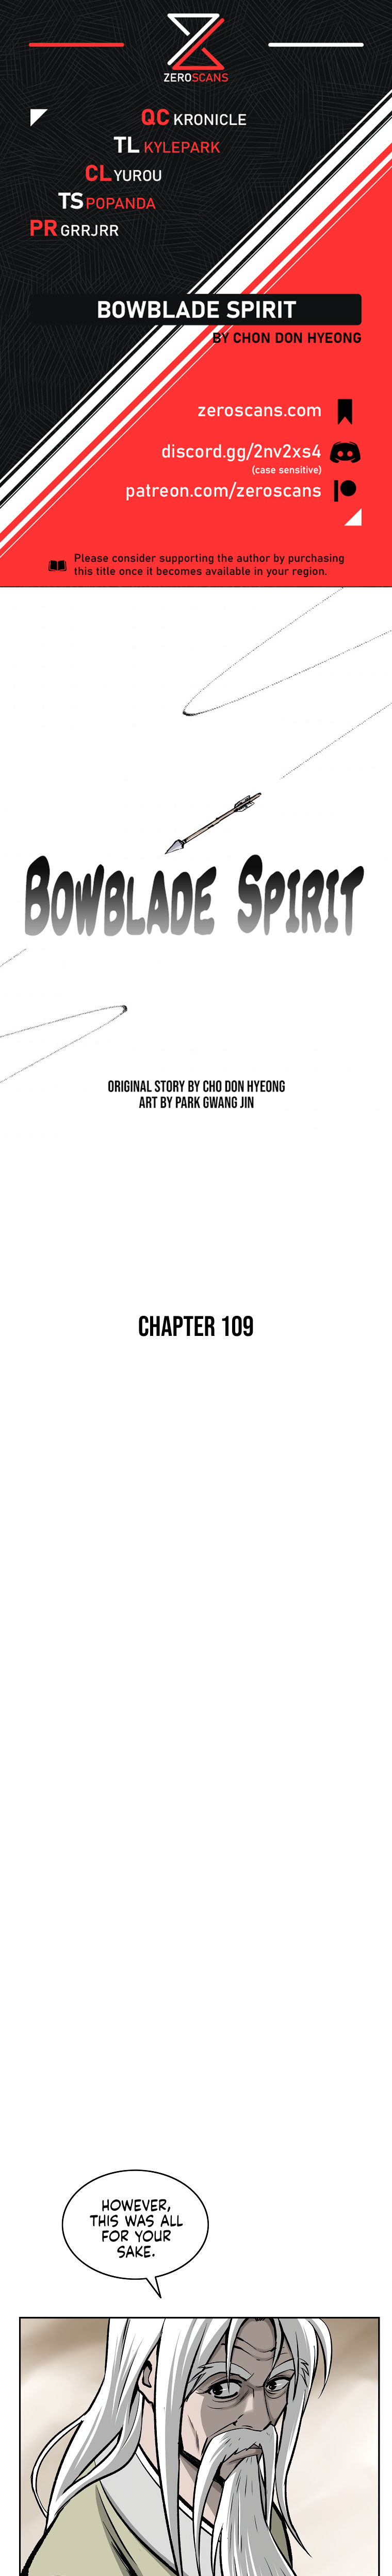 Bowblade Spirit - Chapter 11512 - Image 1